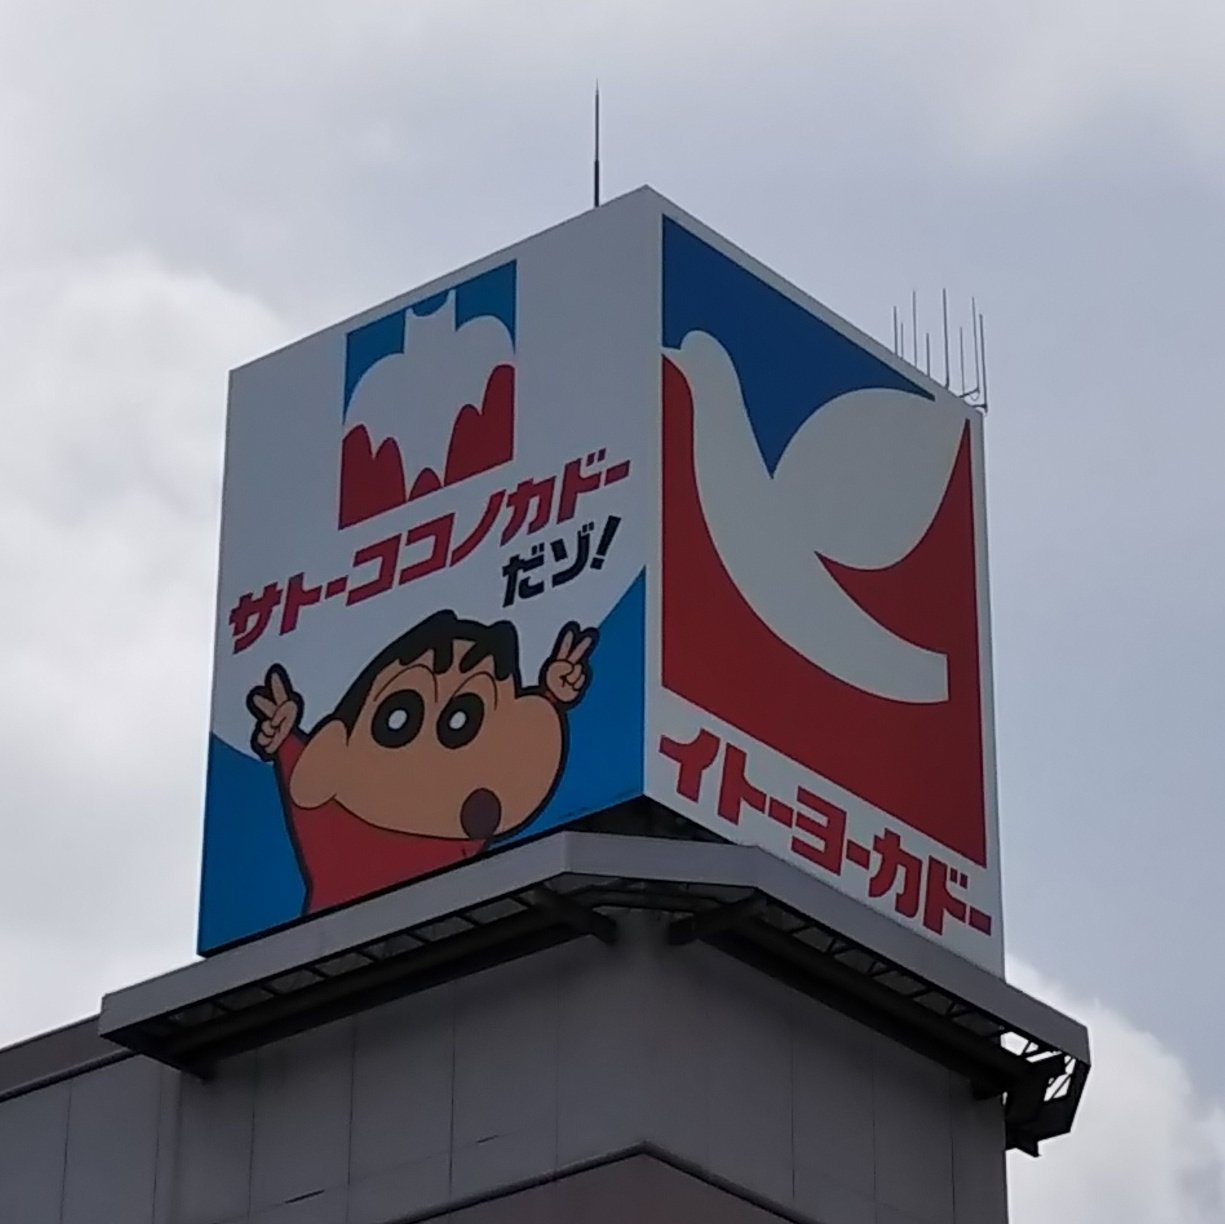 ichikawa tamotsu on twitter 予約していた クレヨンしんちゃんのnanacoカードを受け取りに来ました 向かいの大塚家具さん イトーヨーカドーさんの居抜き では 閉店セールが開催されています イトーヨーカドー サトーココノカドー クレヨン